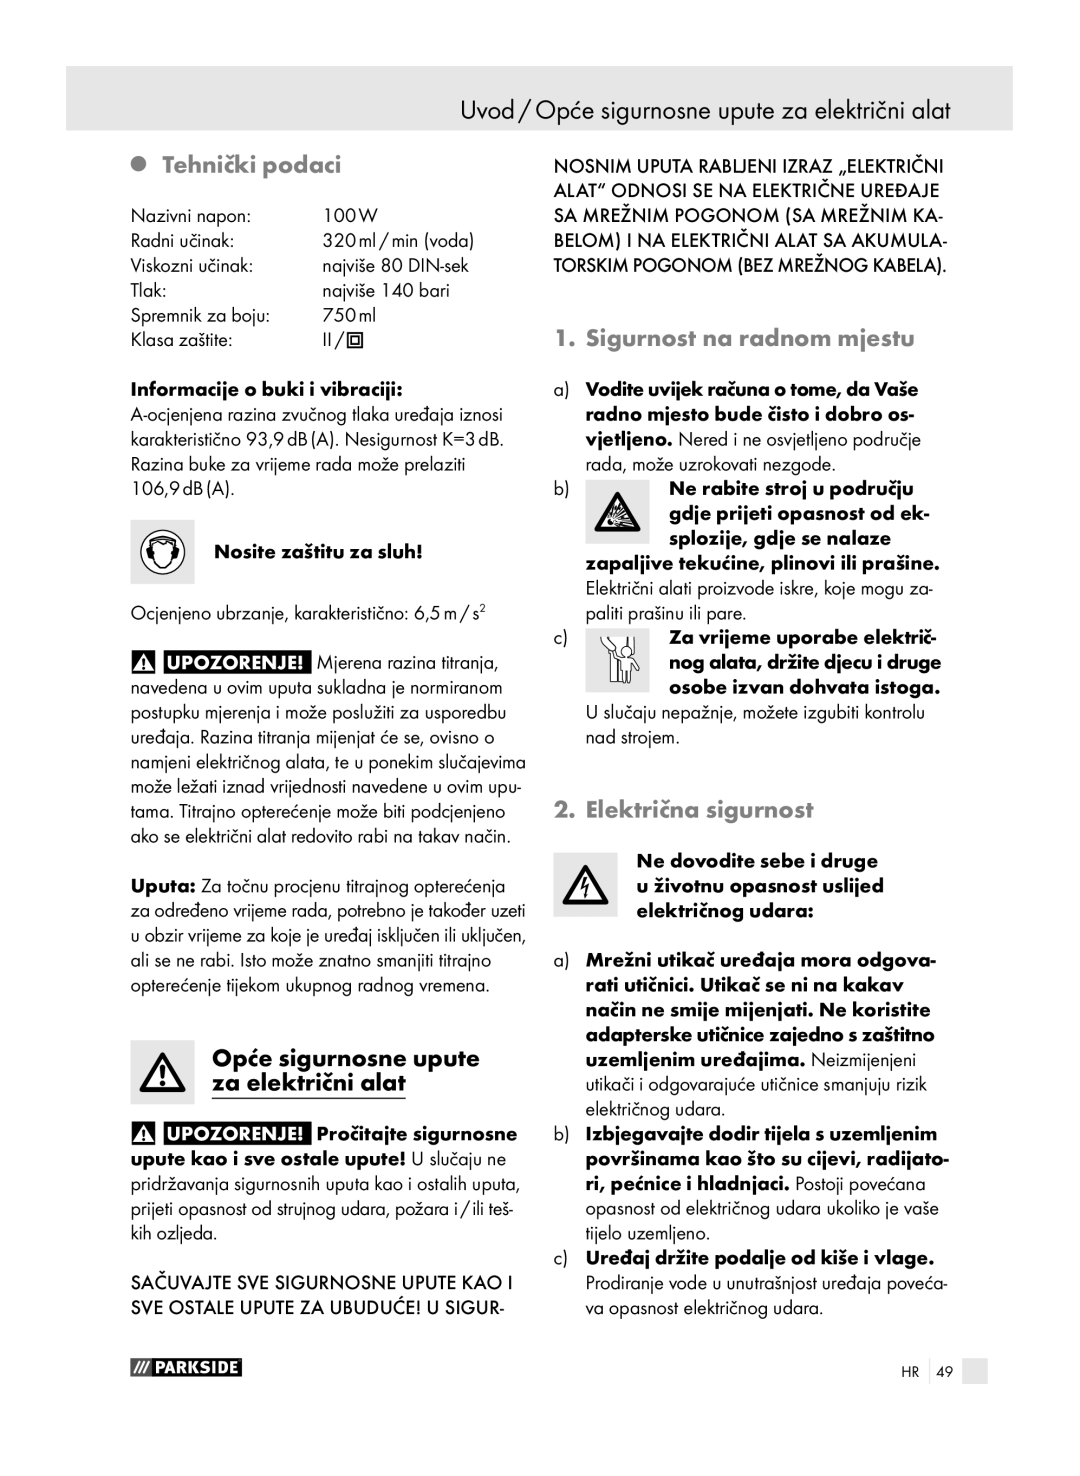 Parkside PFSP 100 manual Uvod / Opće sigurnosne upute za električni alat, Tehnički podaci, Sigurnost na radnom mjestu 